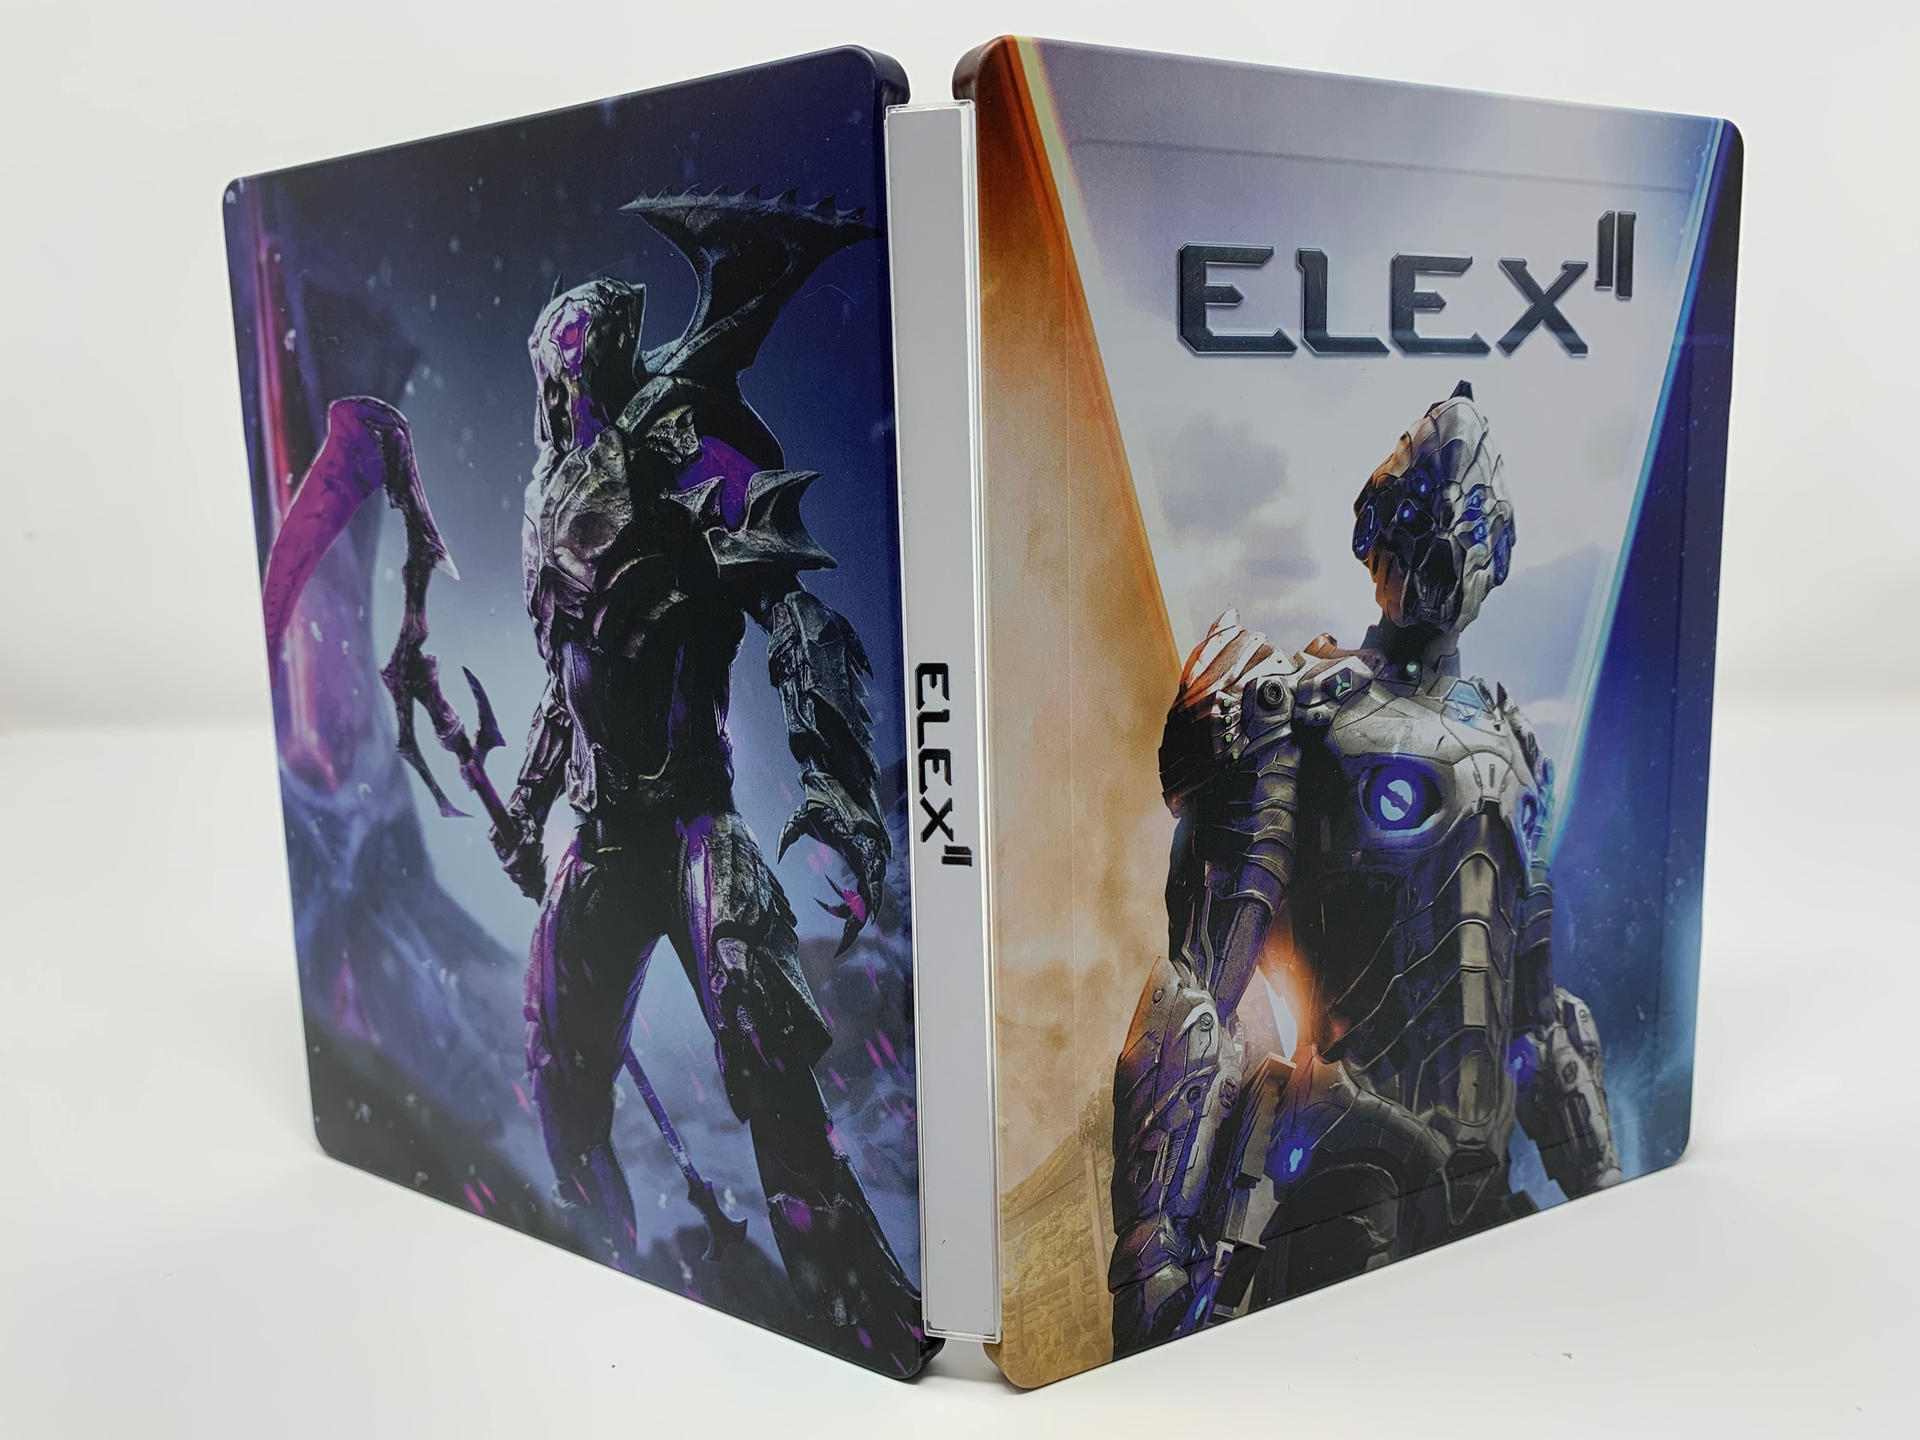 ELEX II - Steelbook - Edition [PlayStation 4] Day 1